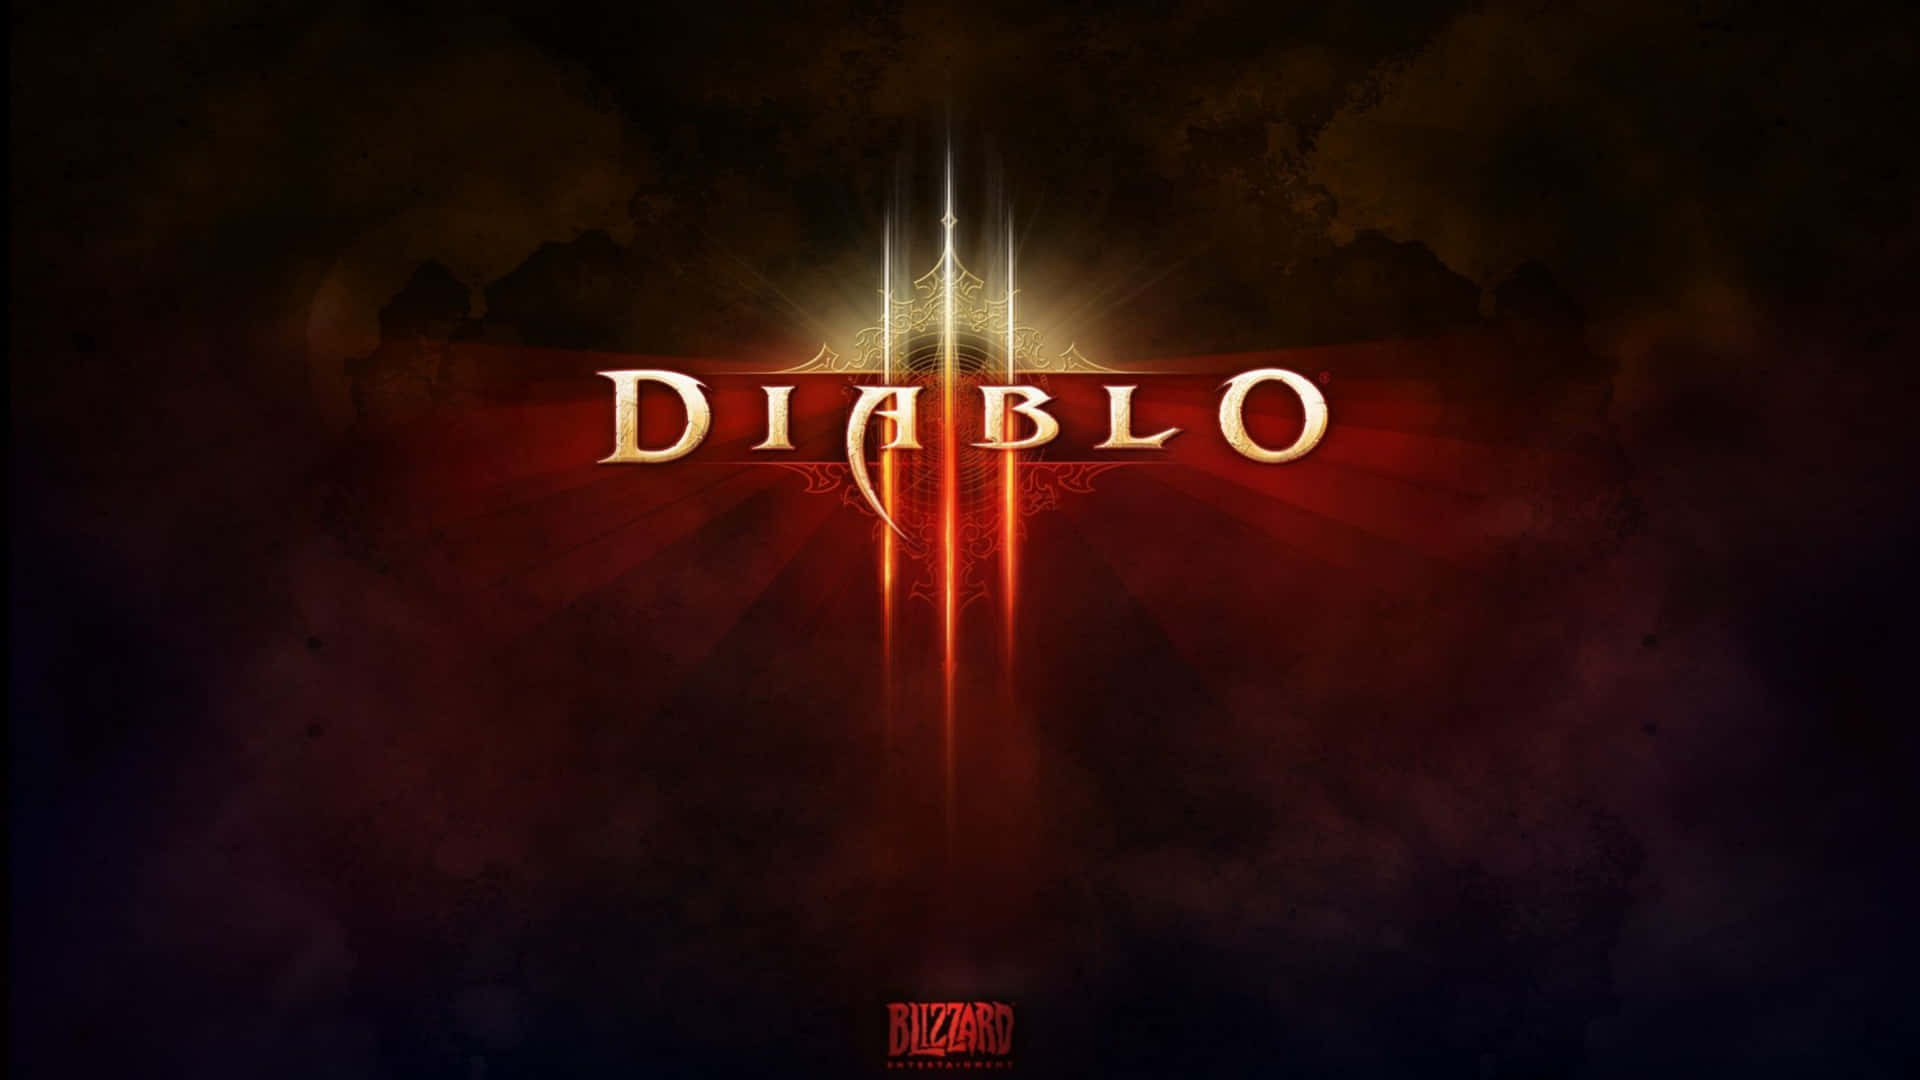 Erobernsie Die Unterwelt Stilvoll Mit Blizzards Diablo 4k Wallpaper